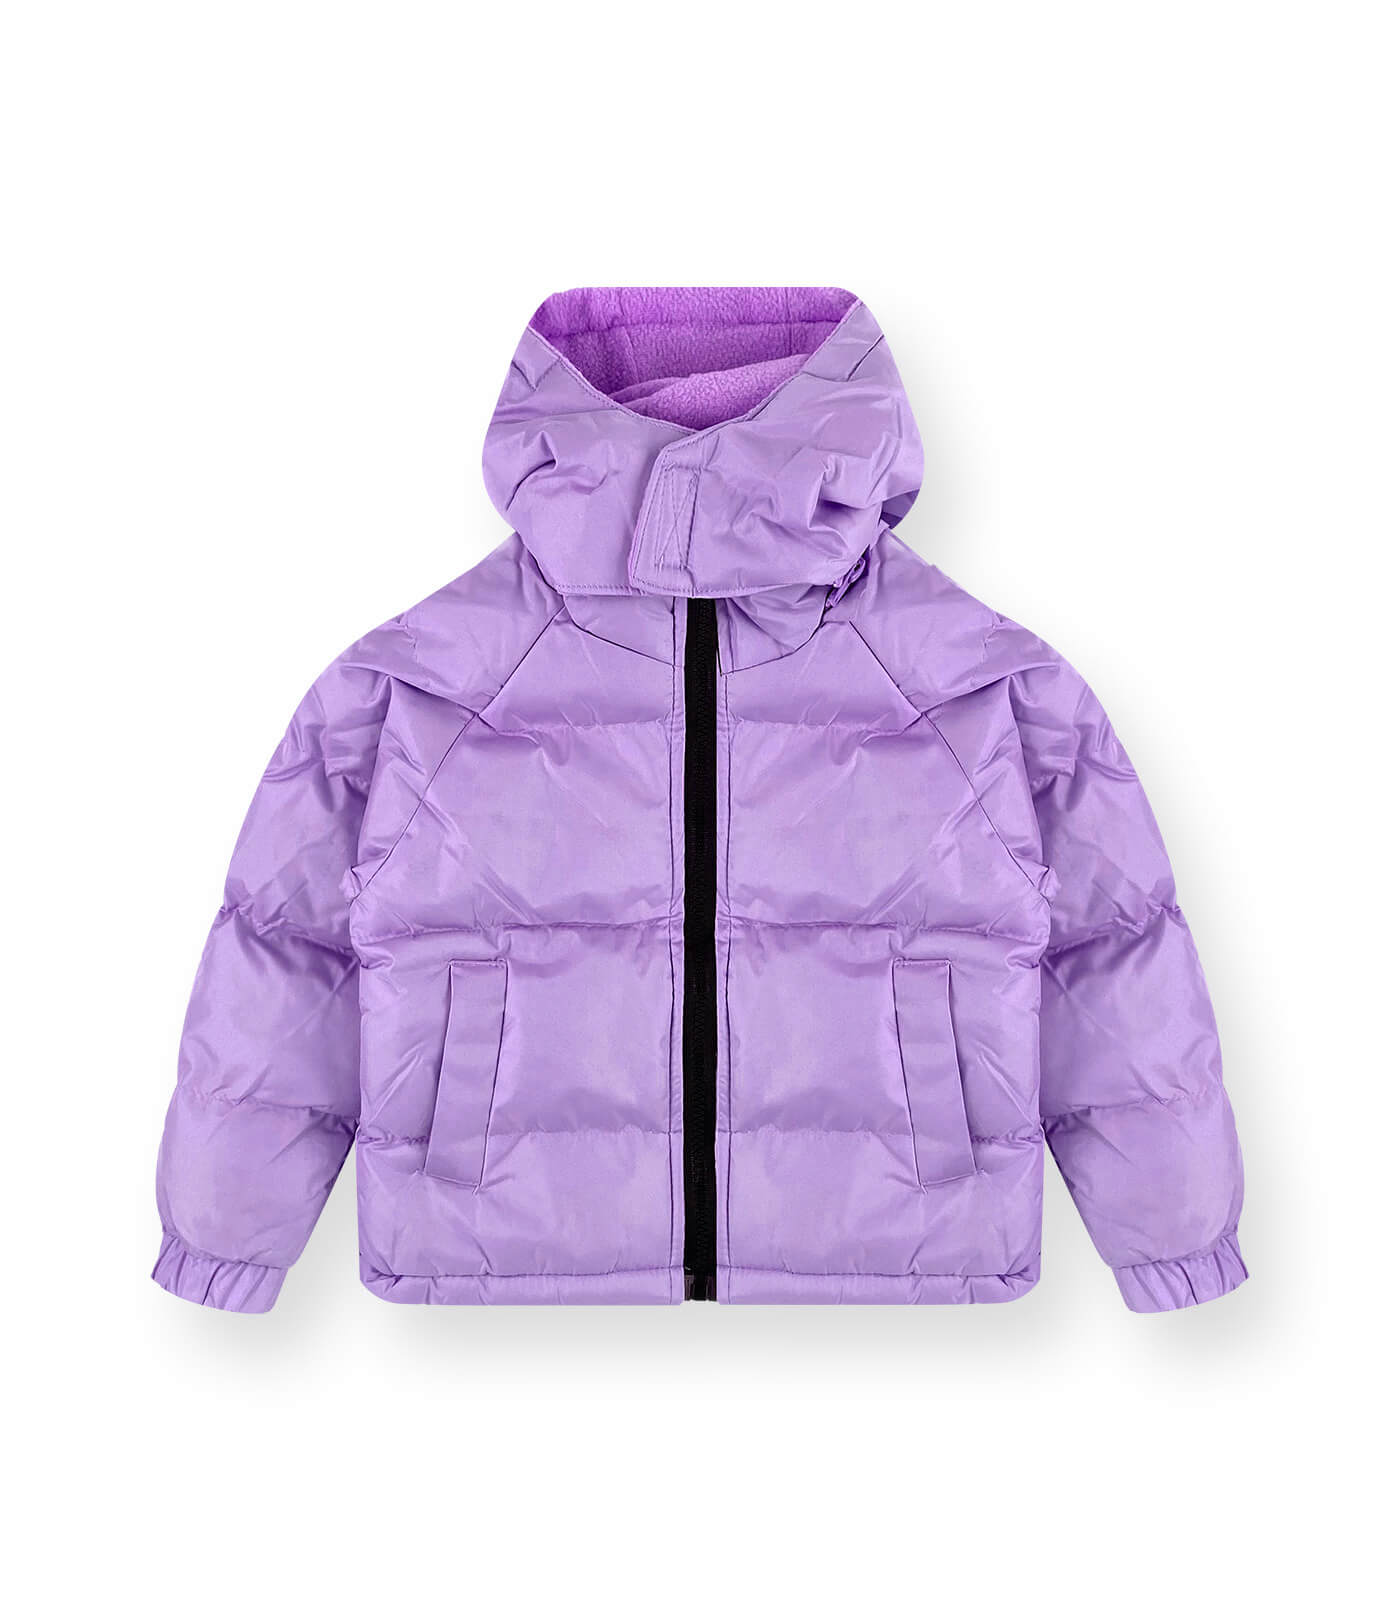 Wholesale Girls’ Windbreaker Jacket #05 - Wholesale Clothing Chase USA ...